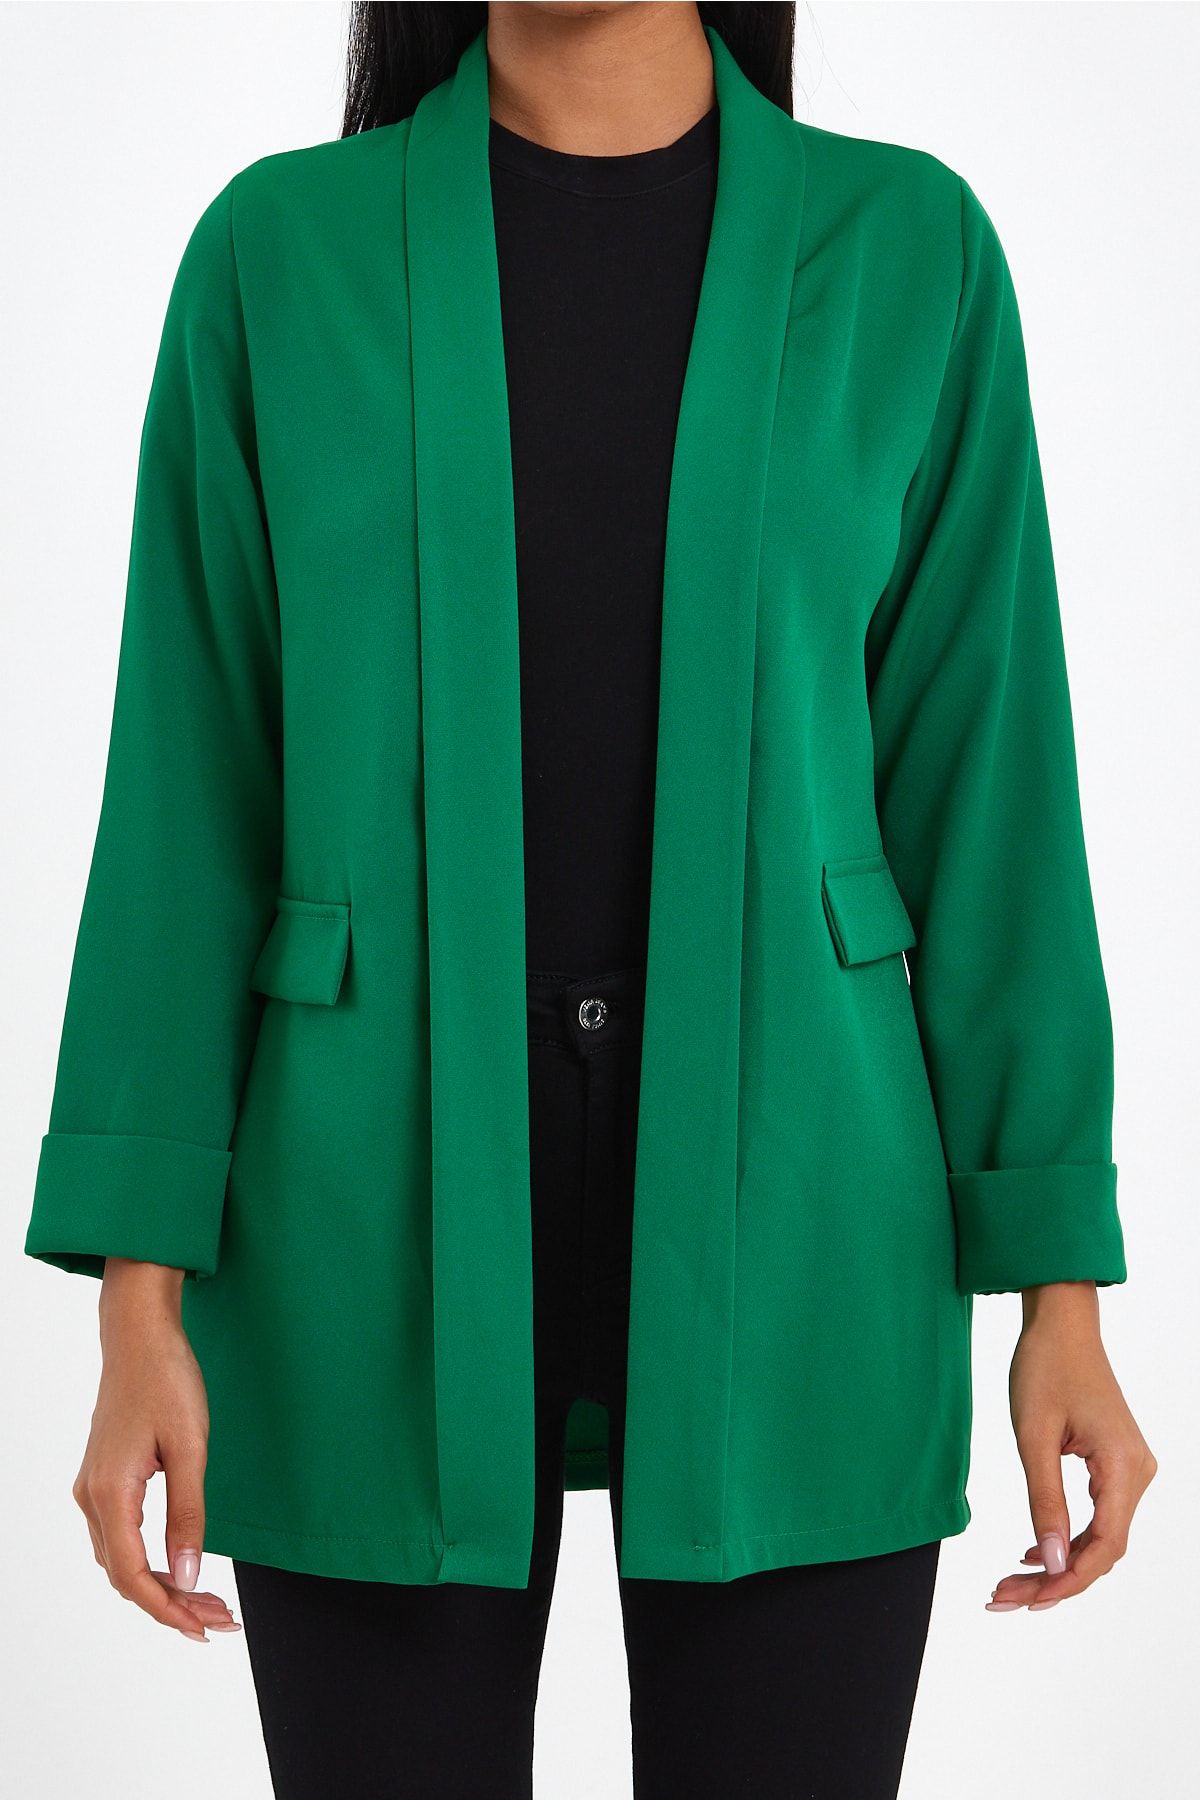 macharelbasic Kadın Yeni Sezon Duble Kol Giy Çık Mevsimlik Ceket Yeşil